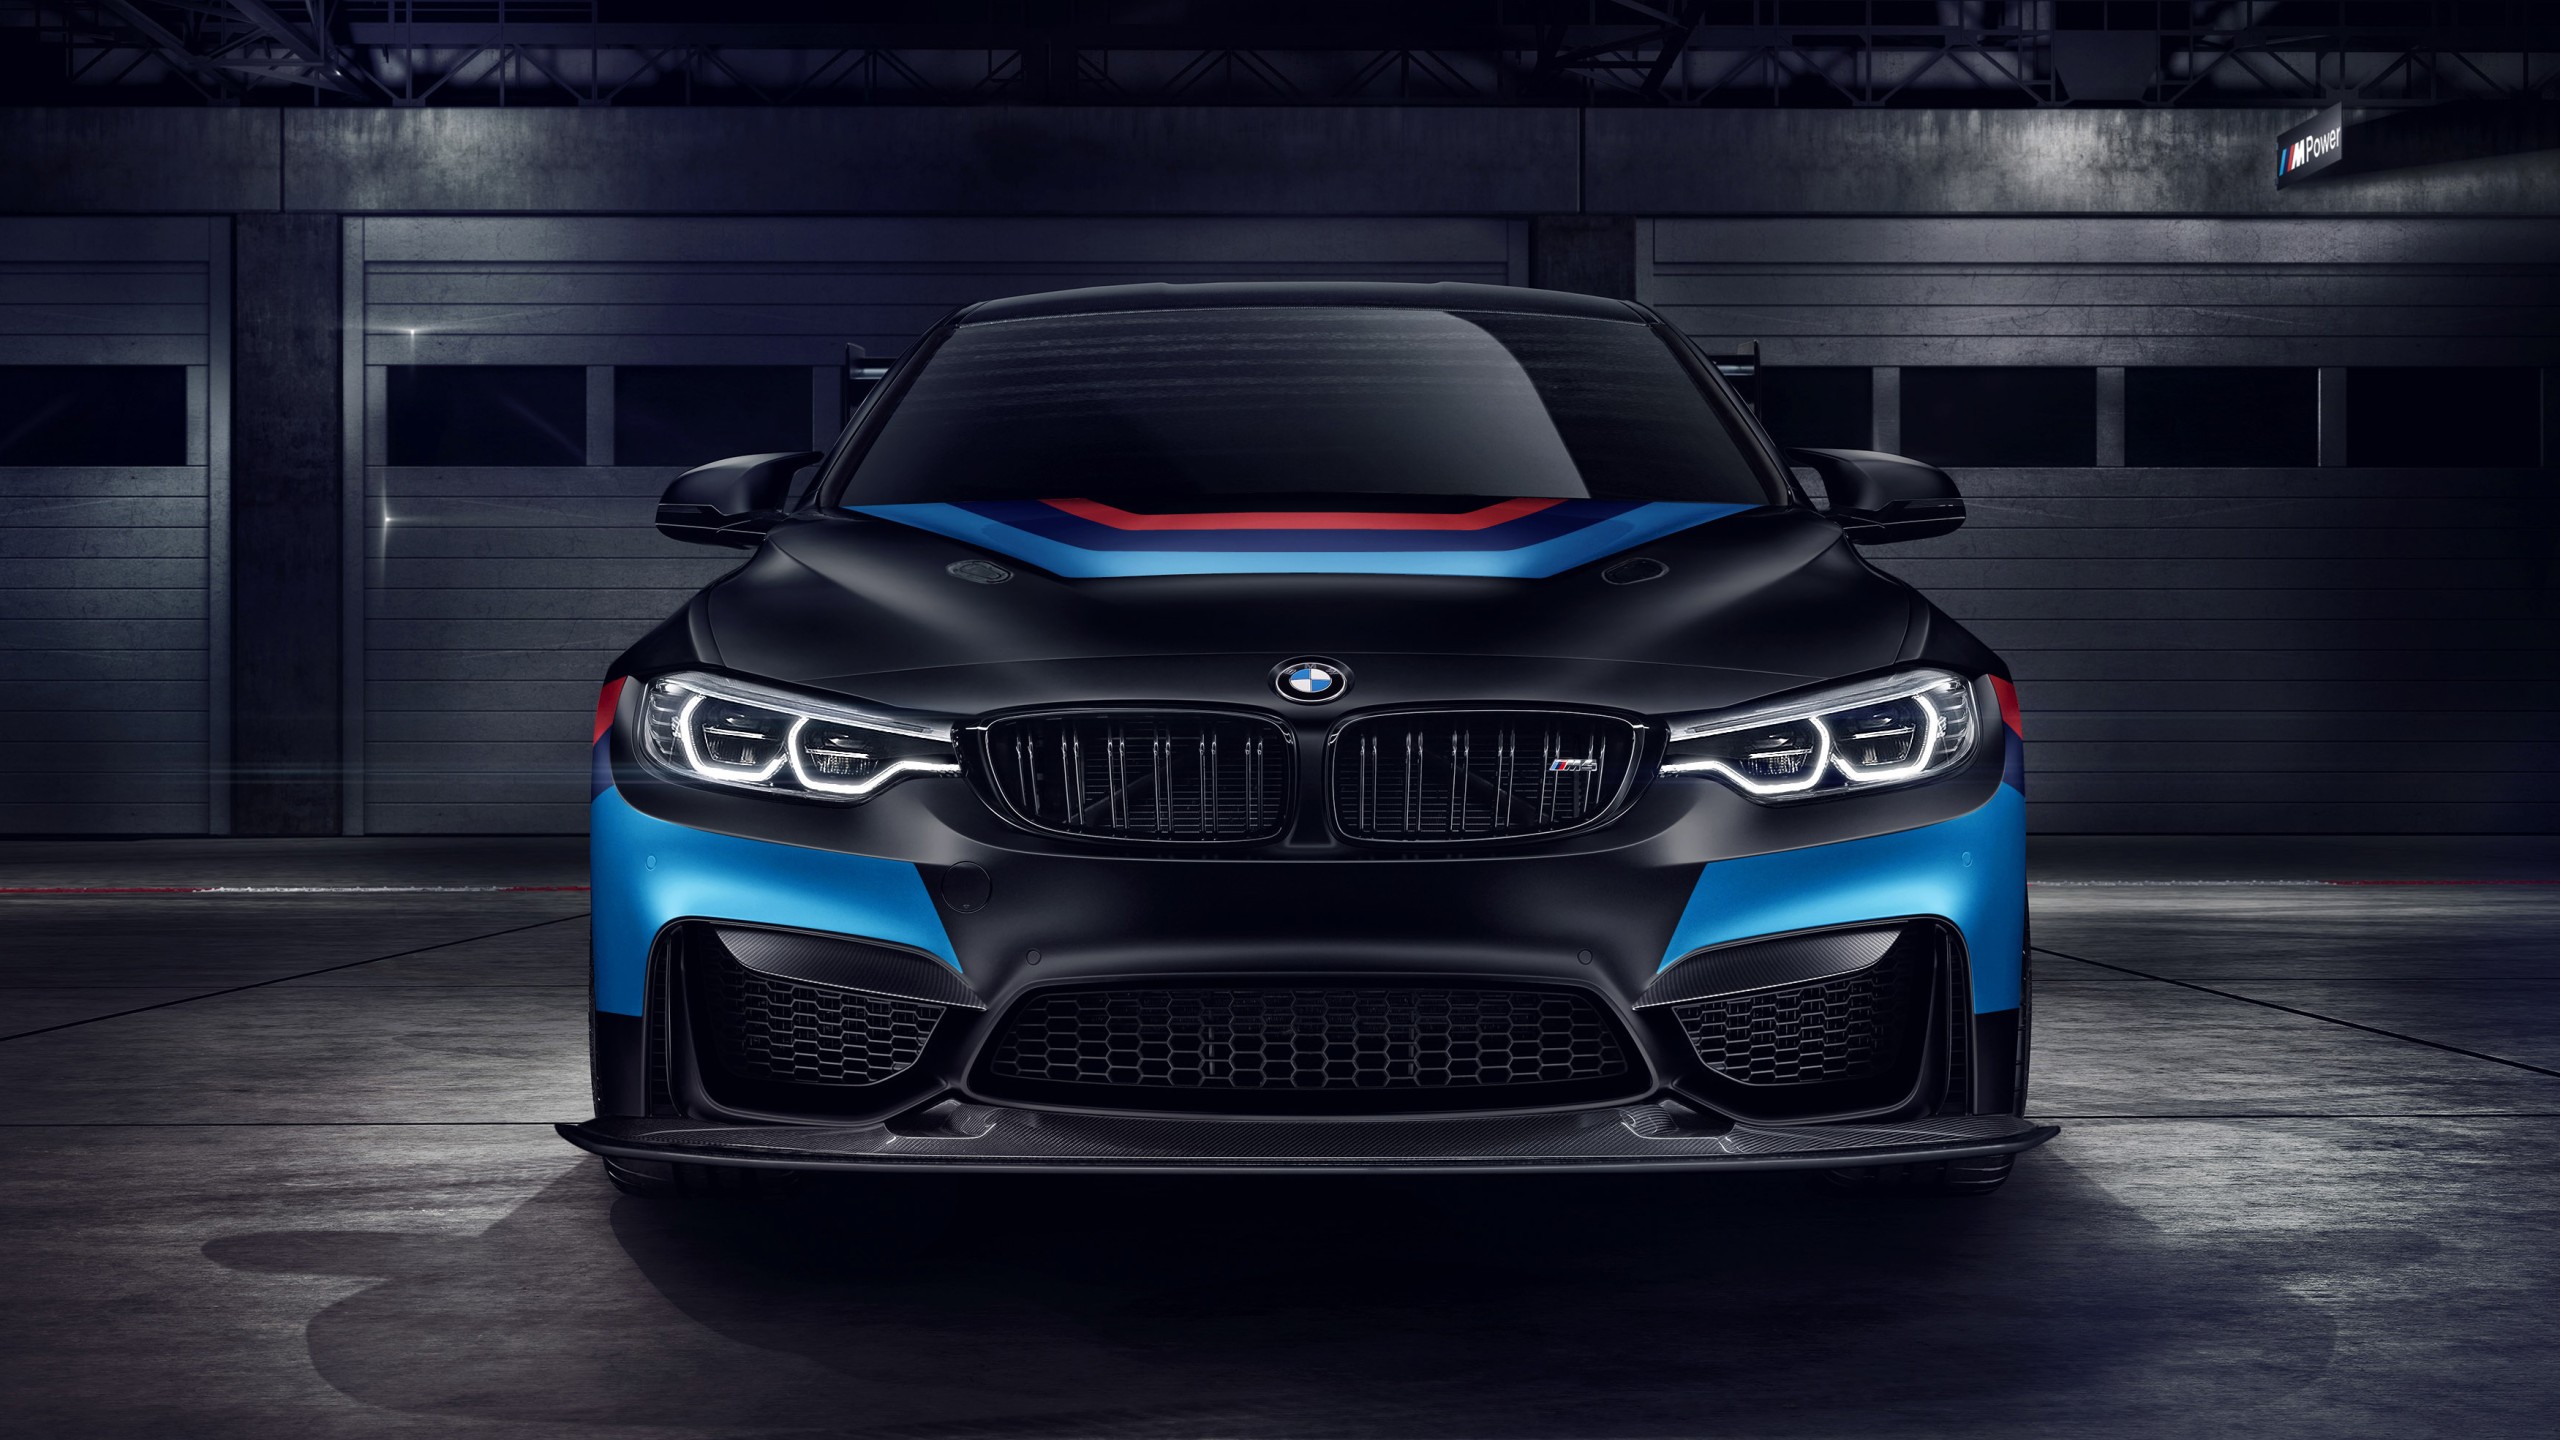 BMW M4 GTS Black Wallpaper | HD Car Wallpapers | ID #8108